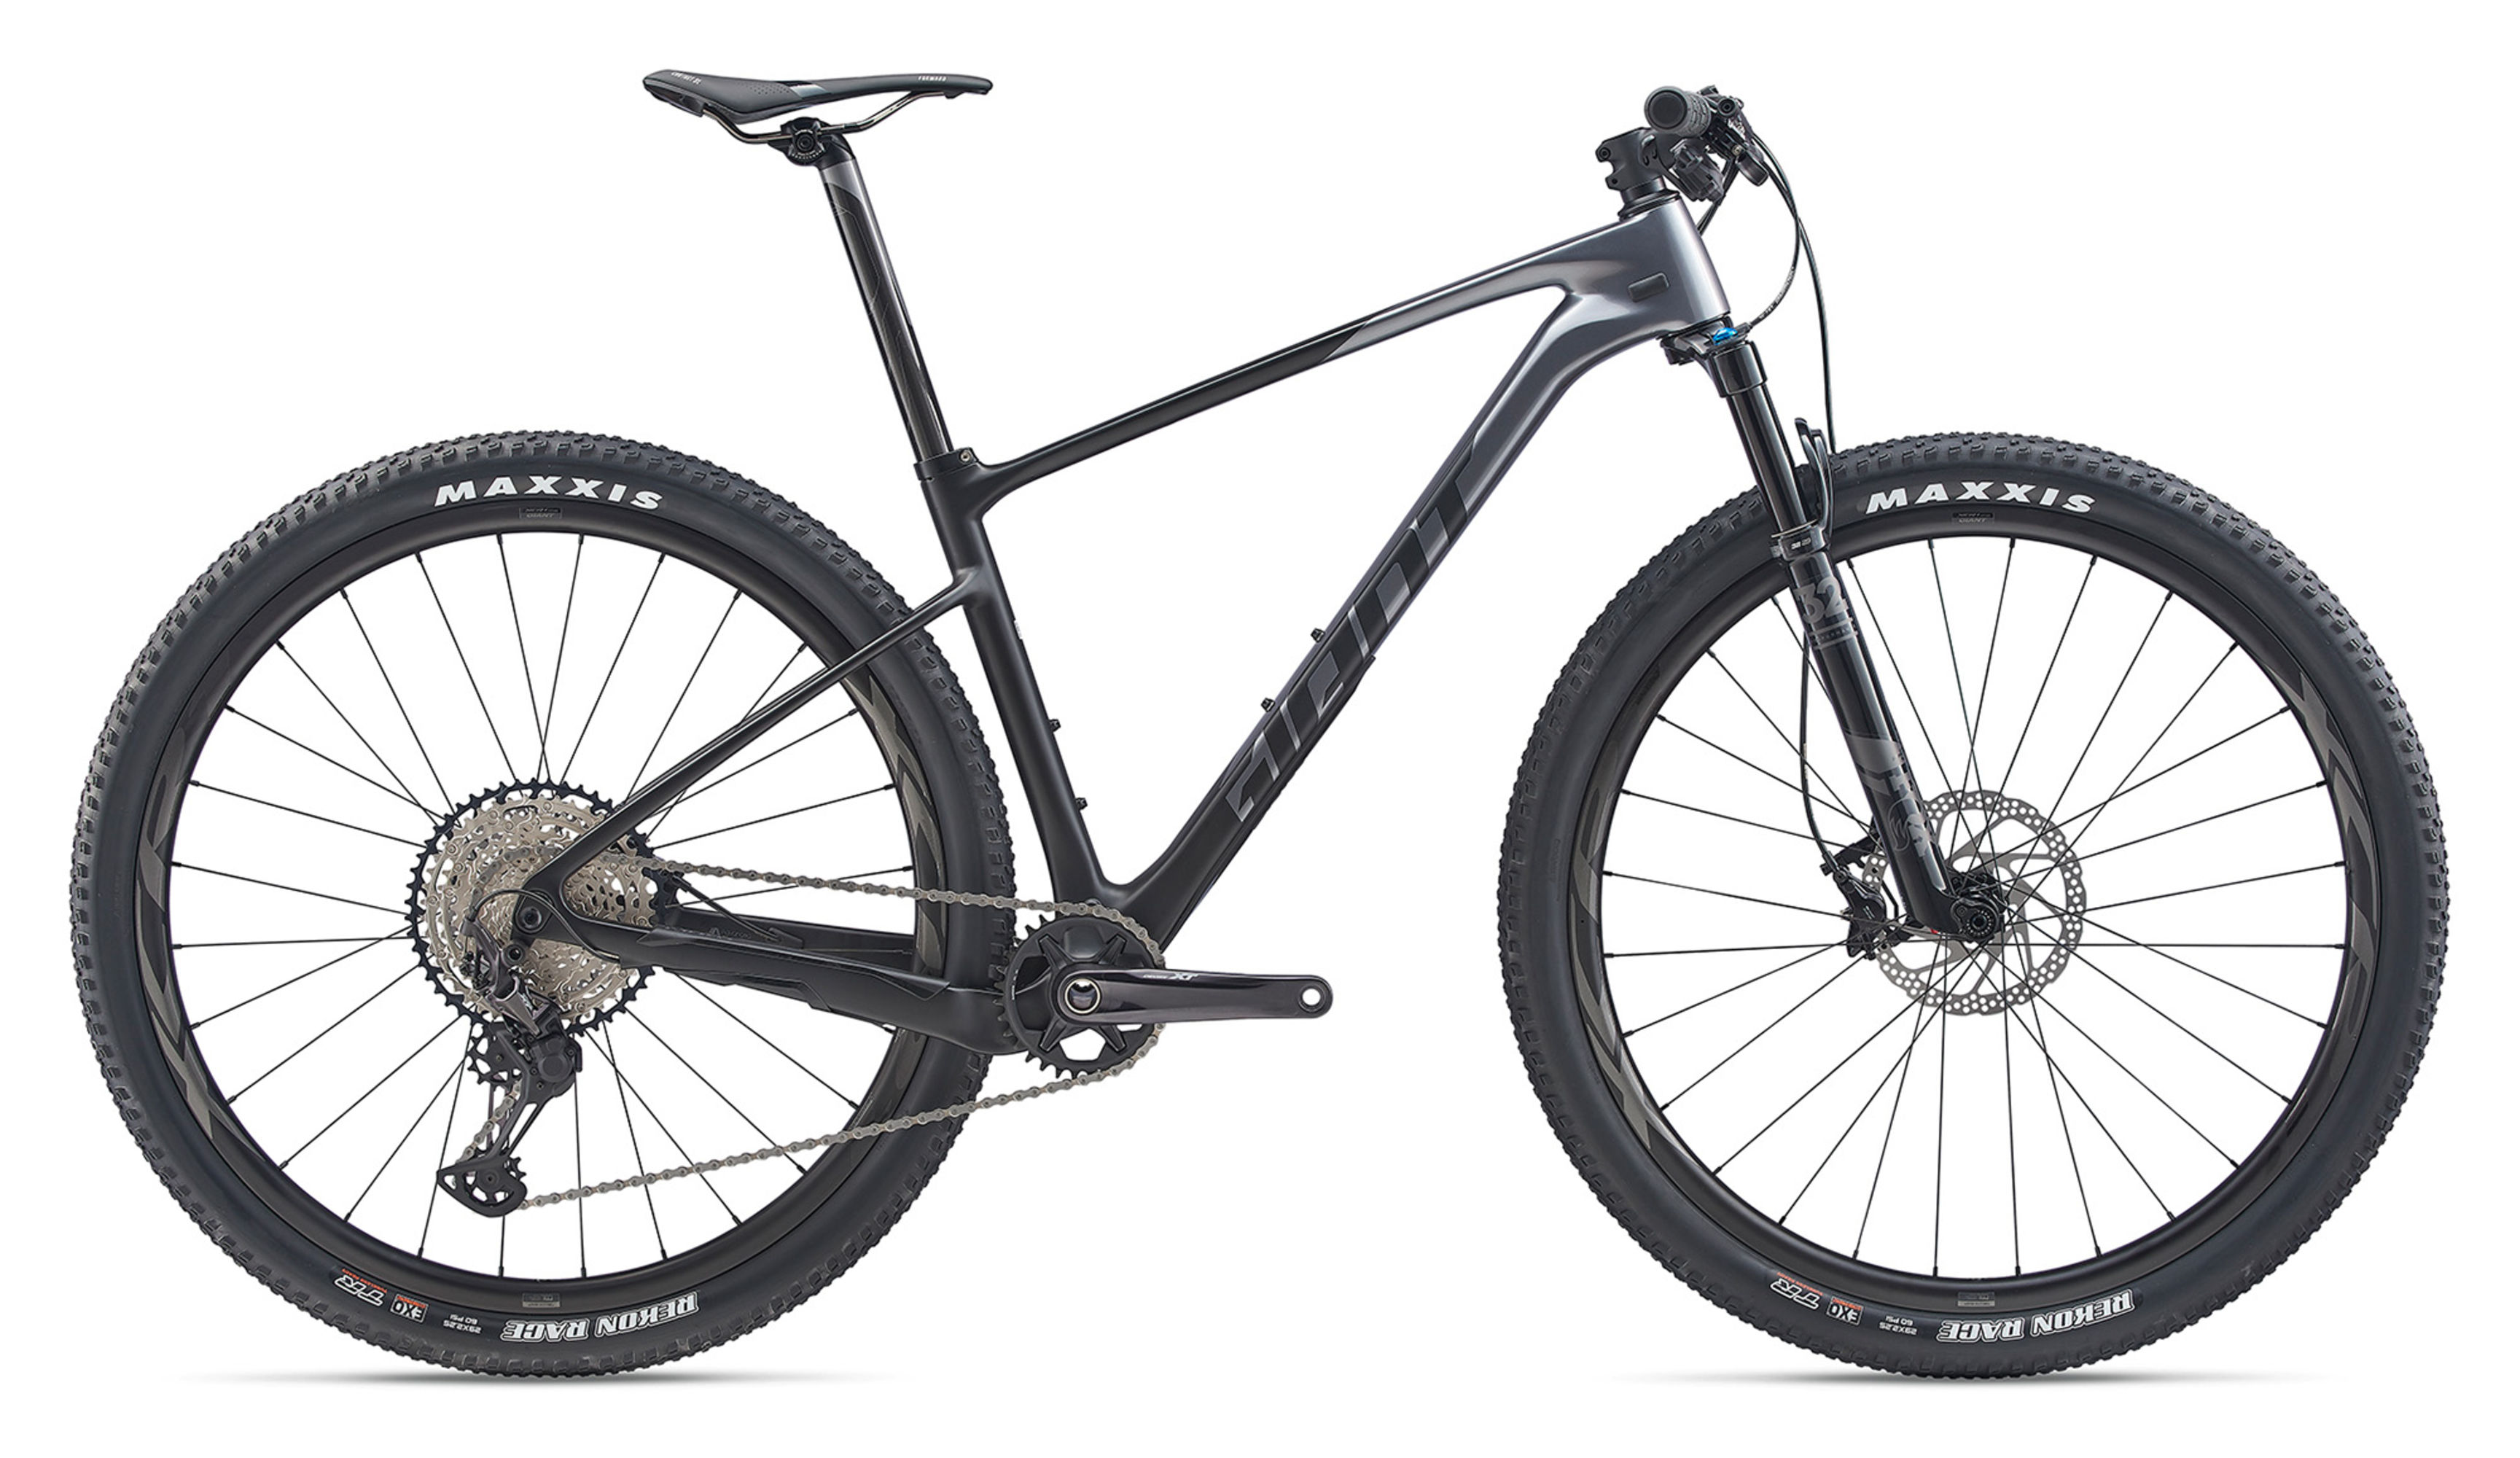  Отзывы о Горном велосипеде Giant XTC Advanced 29 1 2020